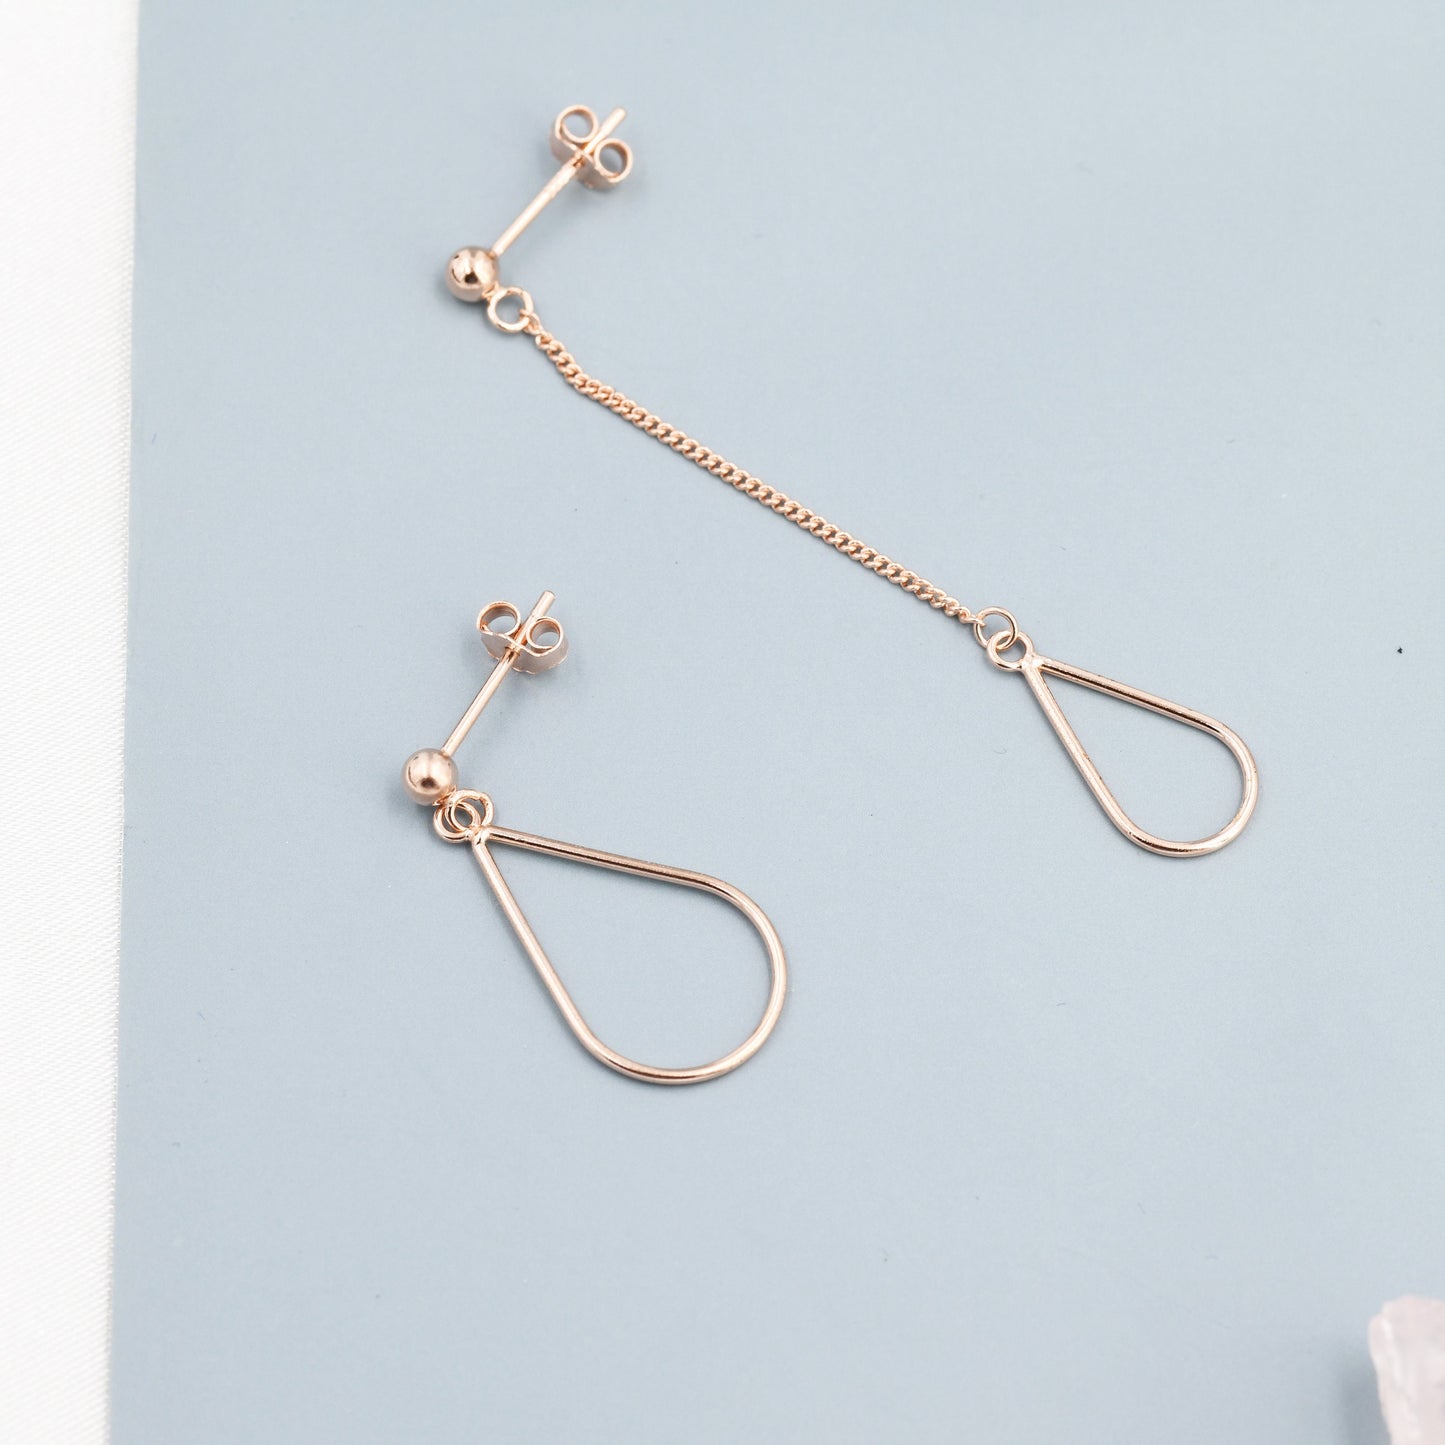 Sterling Silver Mismatched Droplet Stud Drop Earrings, Minimalist Geometric Design, Asymmetric Earrings J25